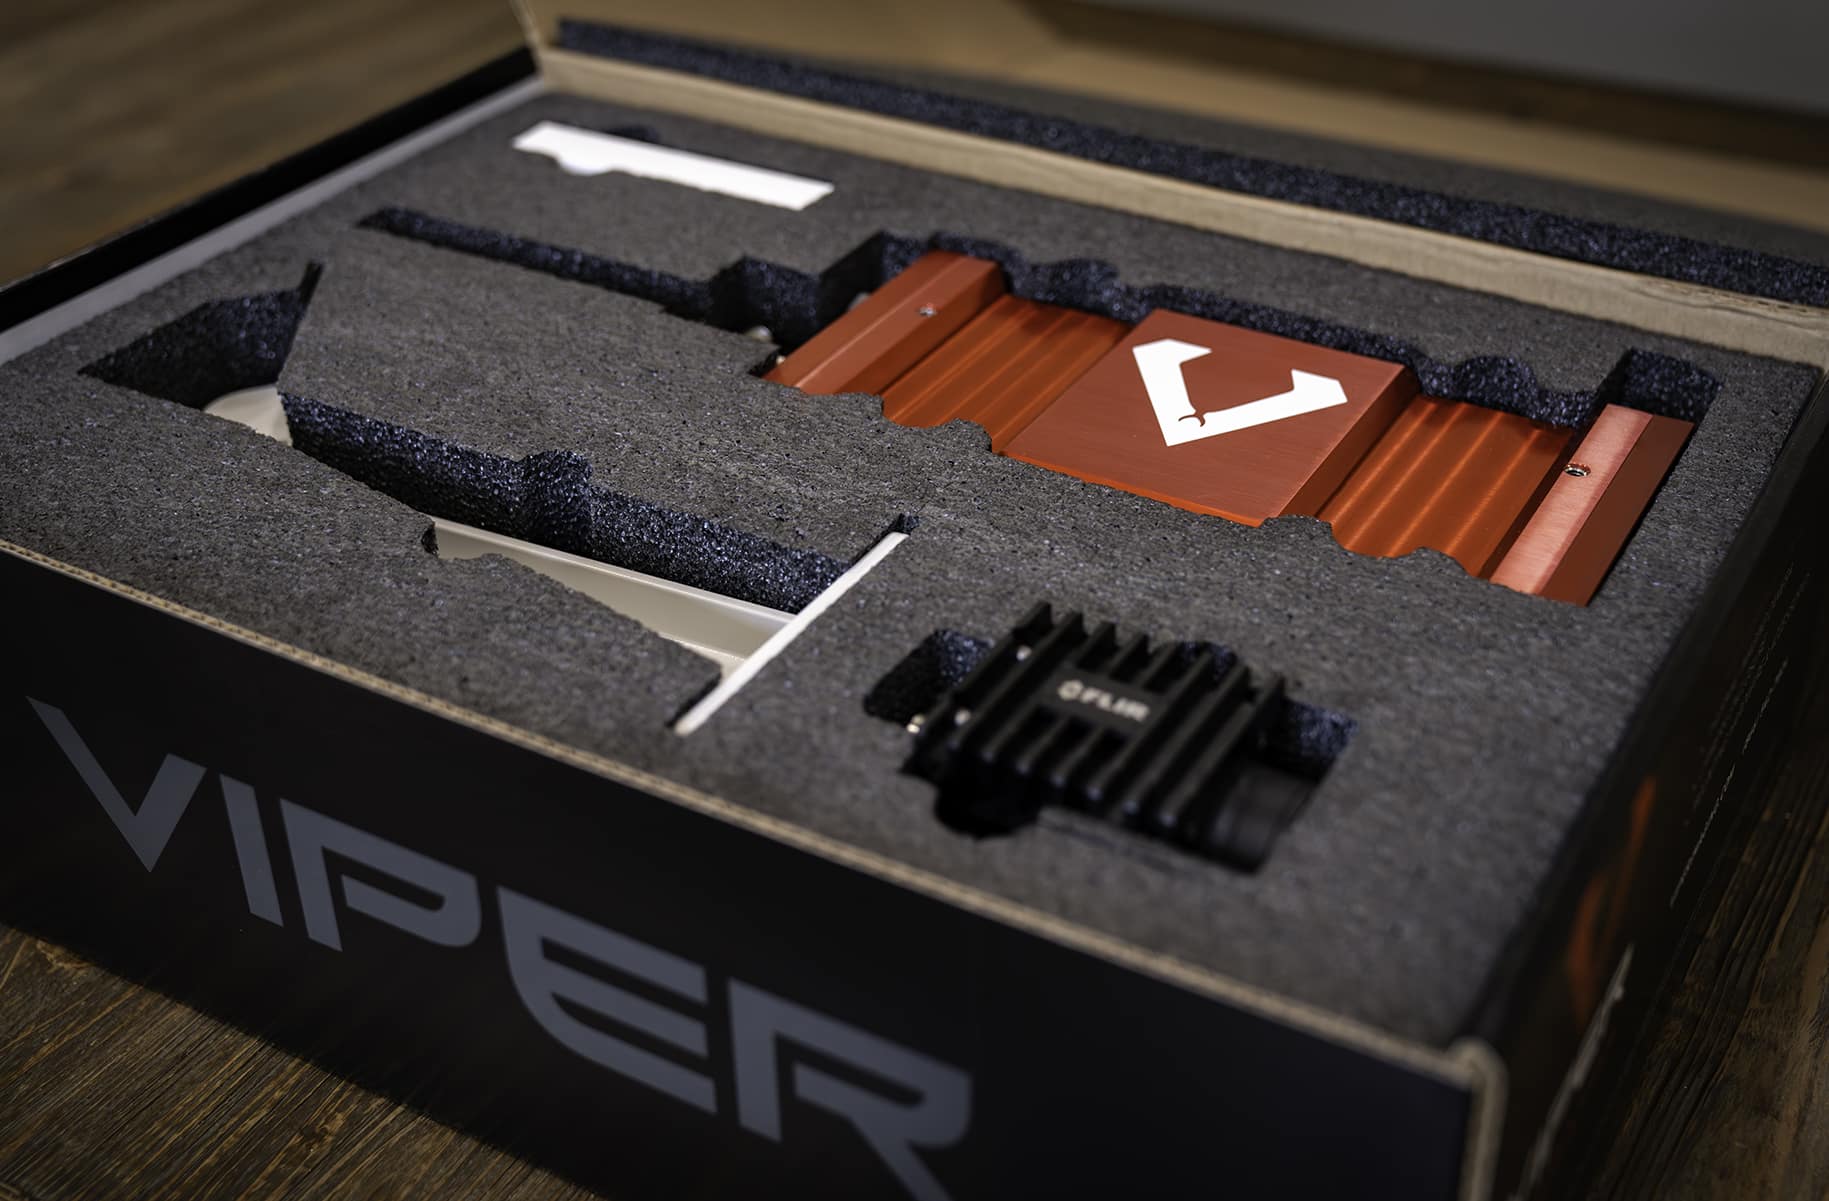 Viper Predator kit - open box angle